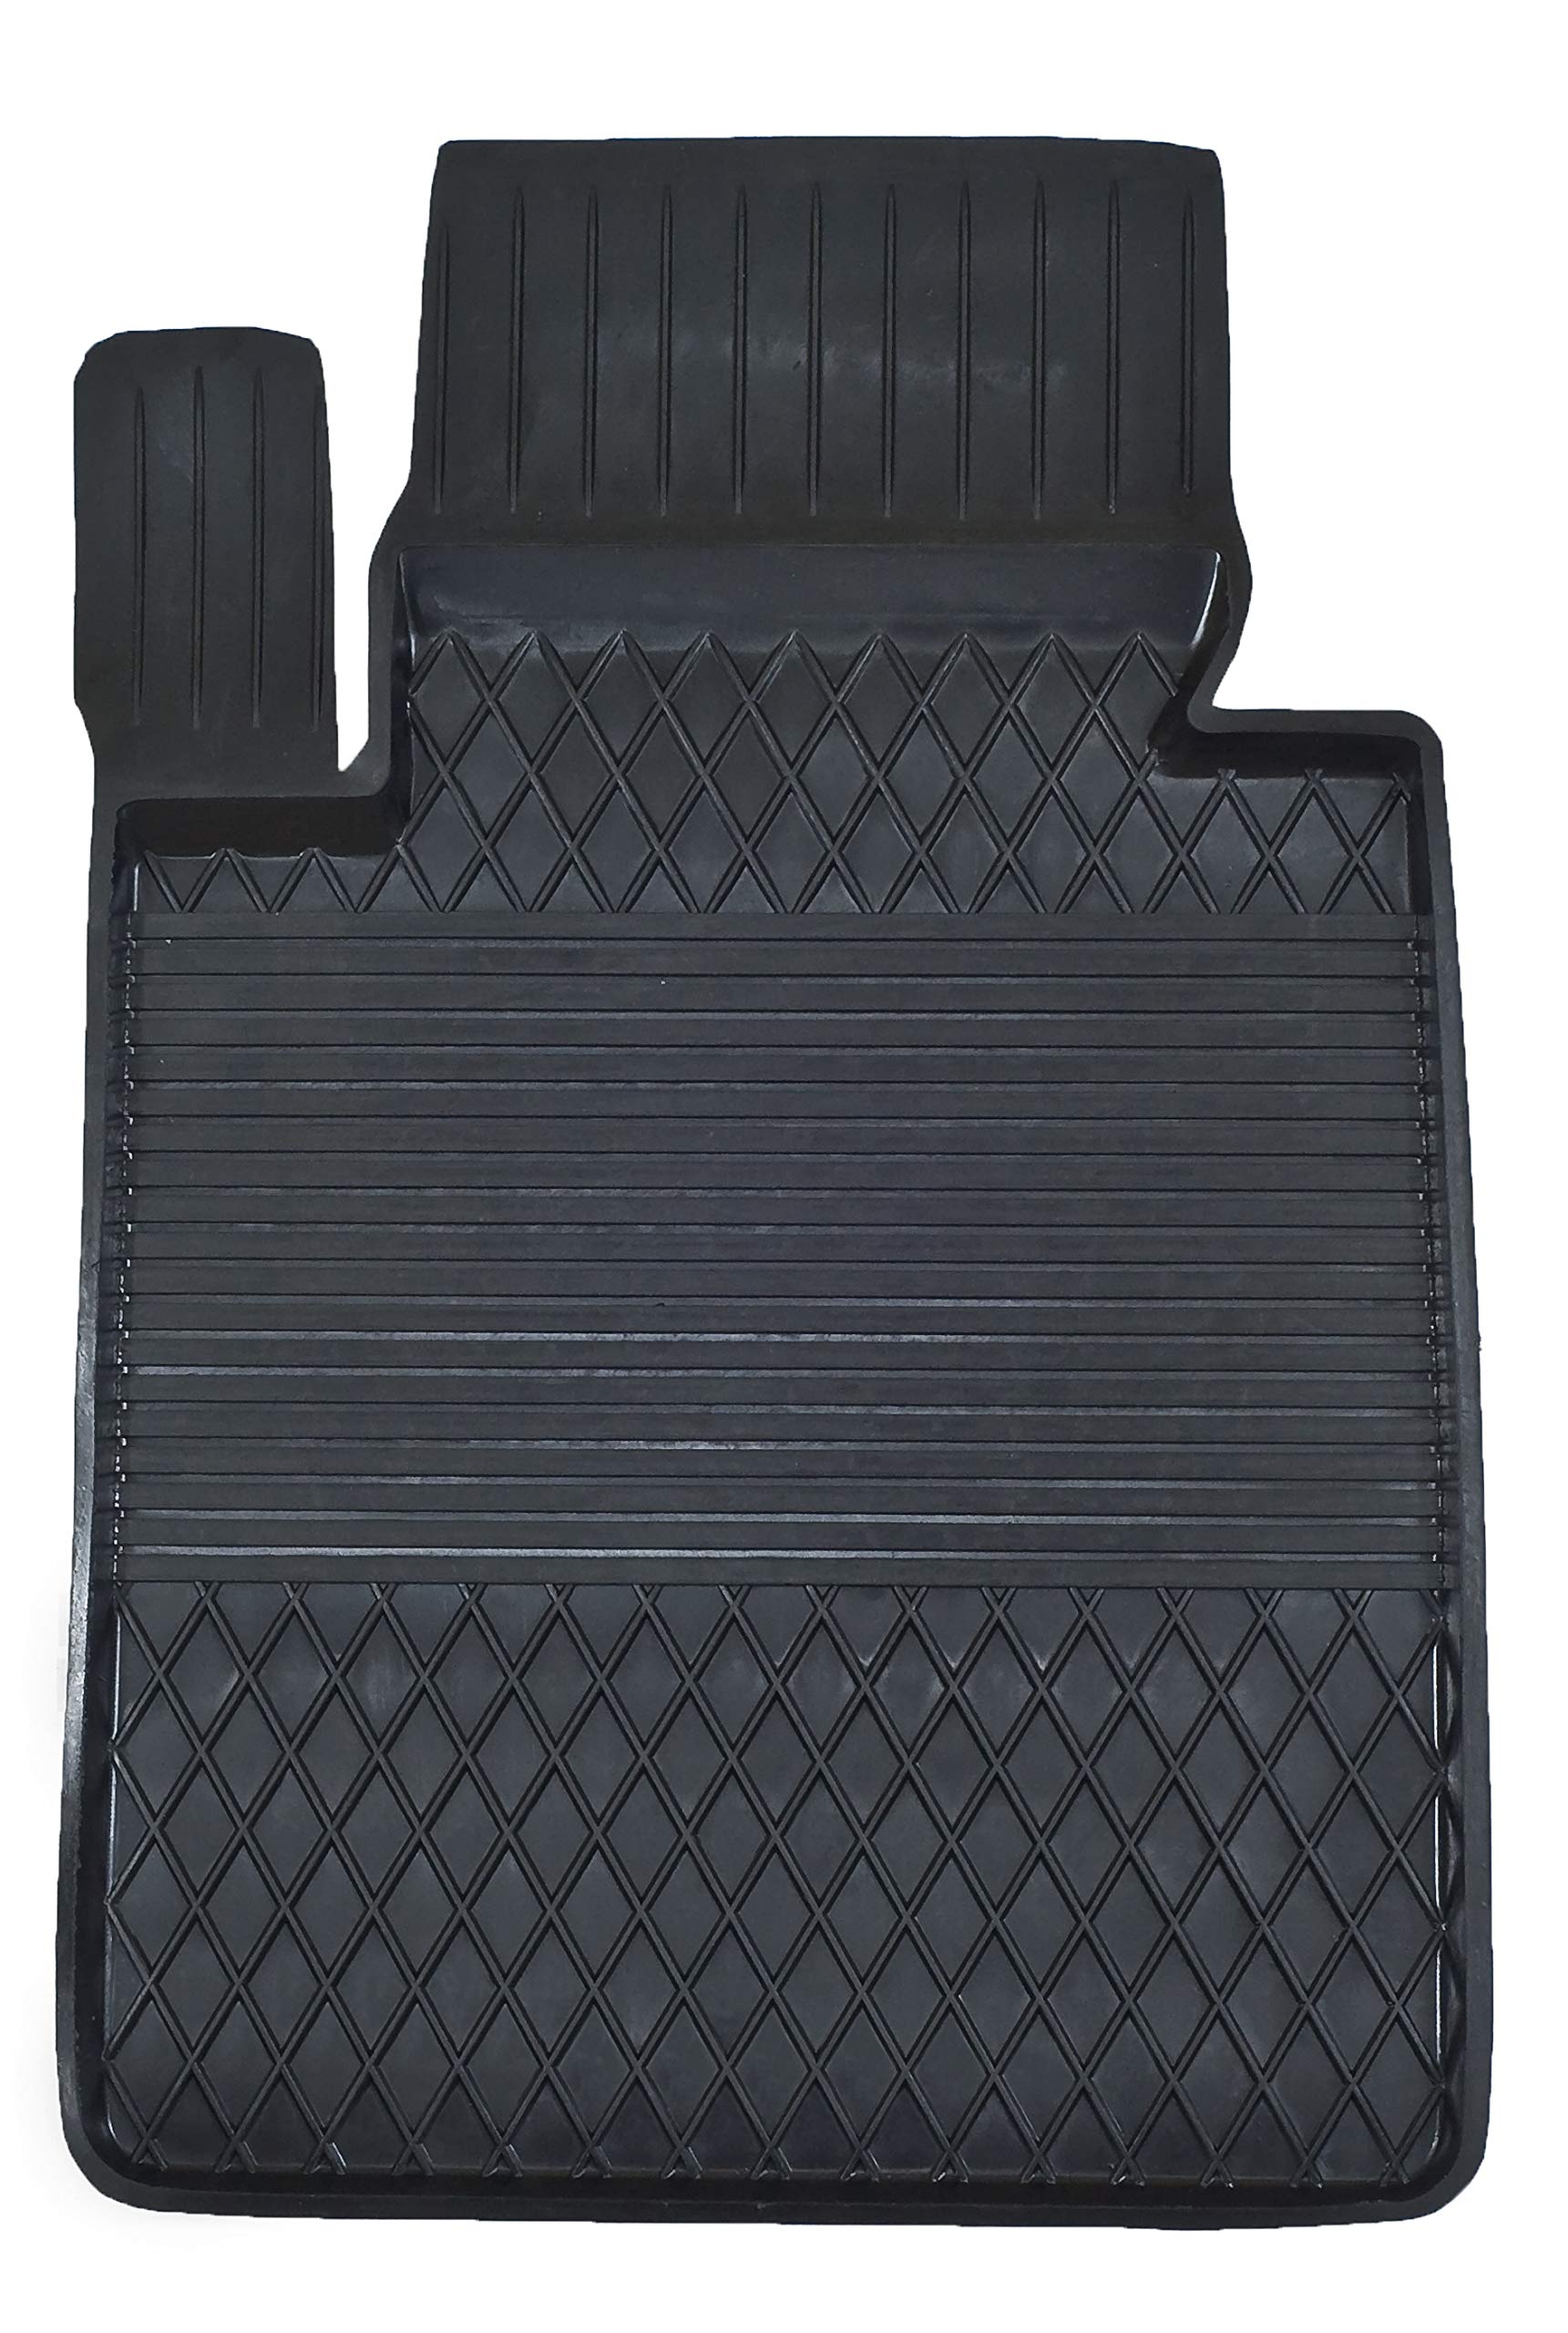 1 Stück Gummimatte Fußmatte MIT HOHEM Rand Fahrer kompatibel mit Mercedes GLK X204 (2008-2015) ideal angepasst von KO-XGUM